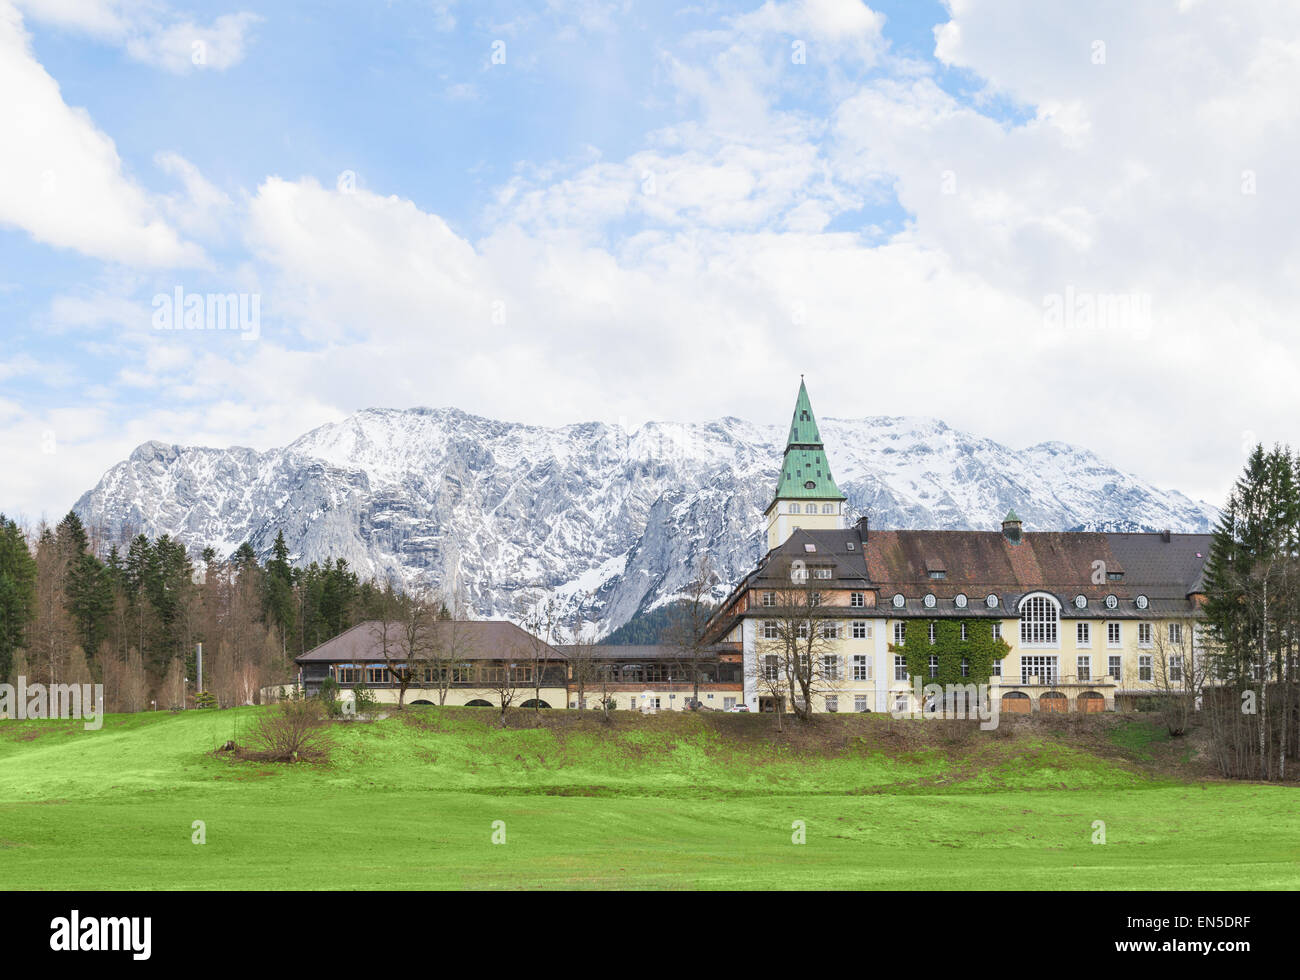 Hotel Schloss Elmau im bayerischen Alpental werden die Website des G7-Gipfels im Jahr 2015. Der G7 hat remote Locations für ihre jährlichen Treffen in den lezten Jahren aus Sicherheitsgründen gewählt. Stockfoto